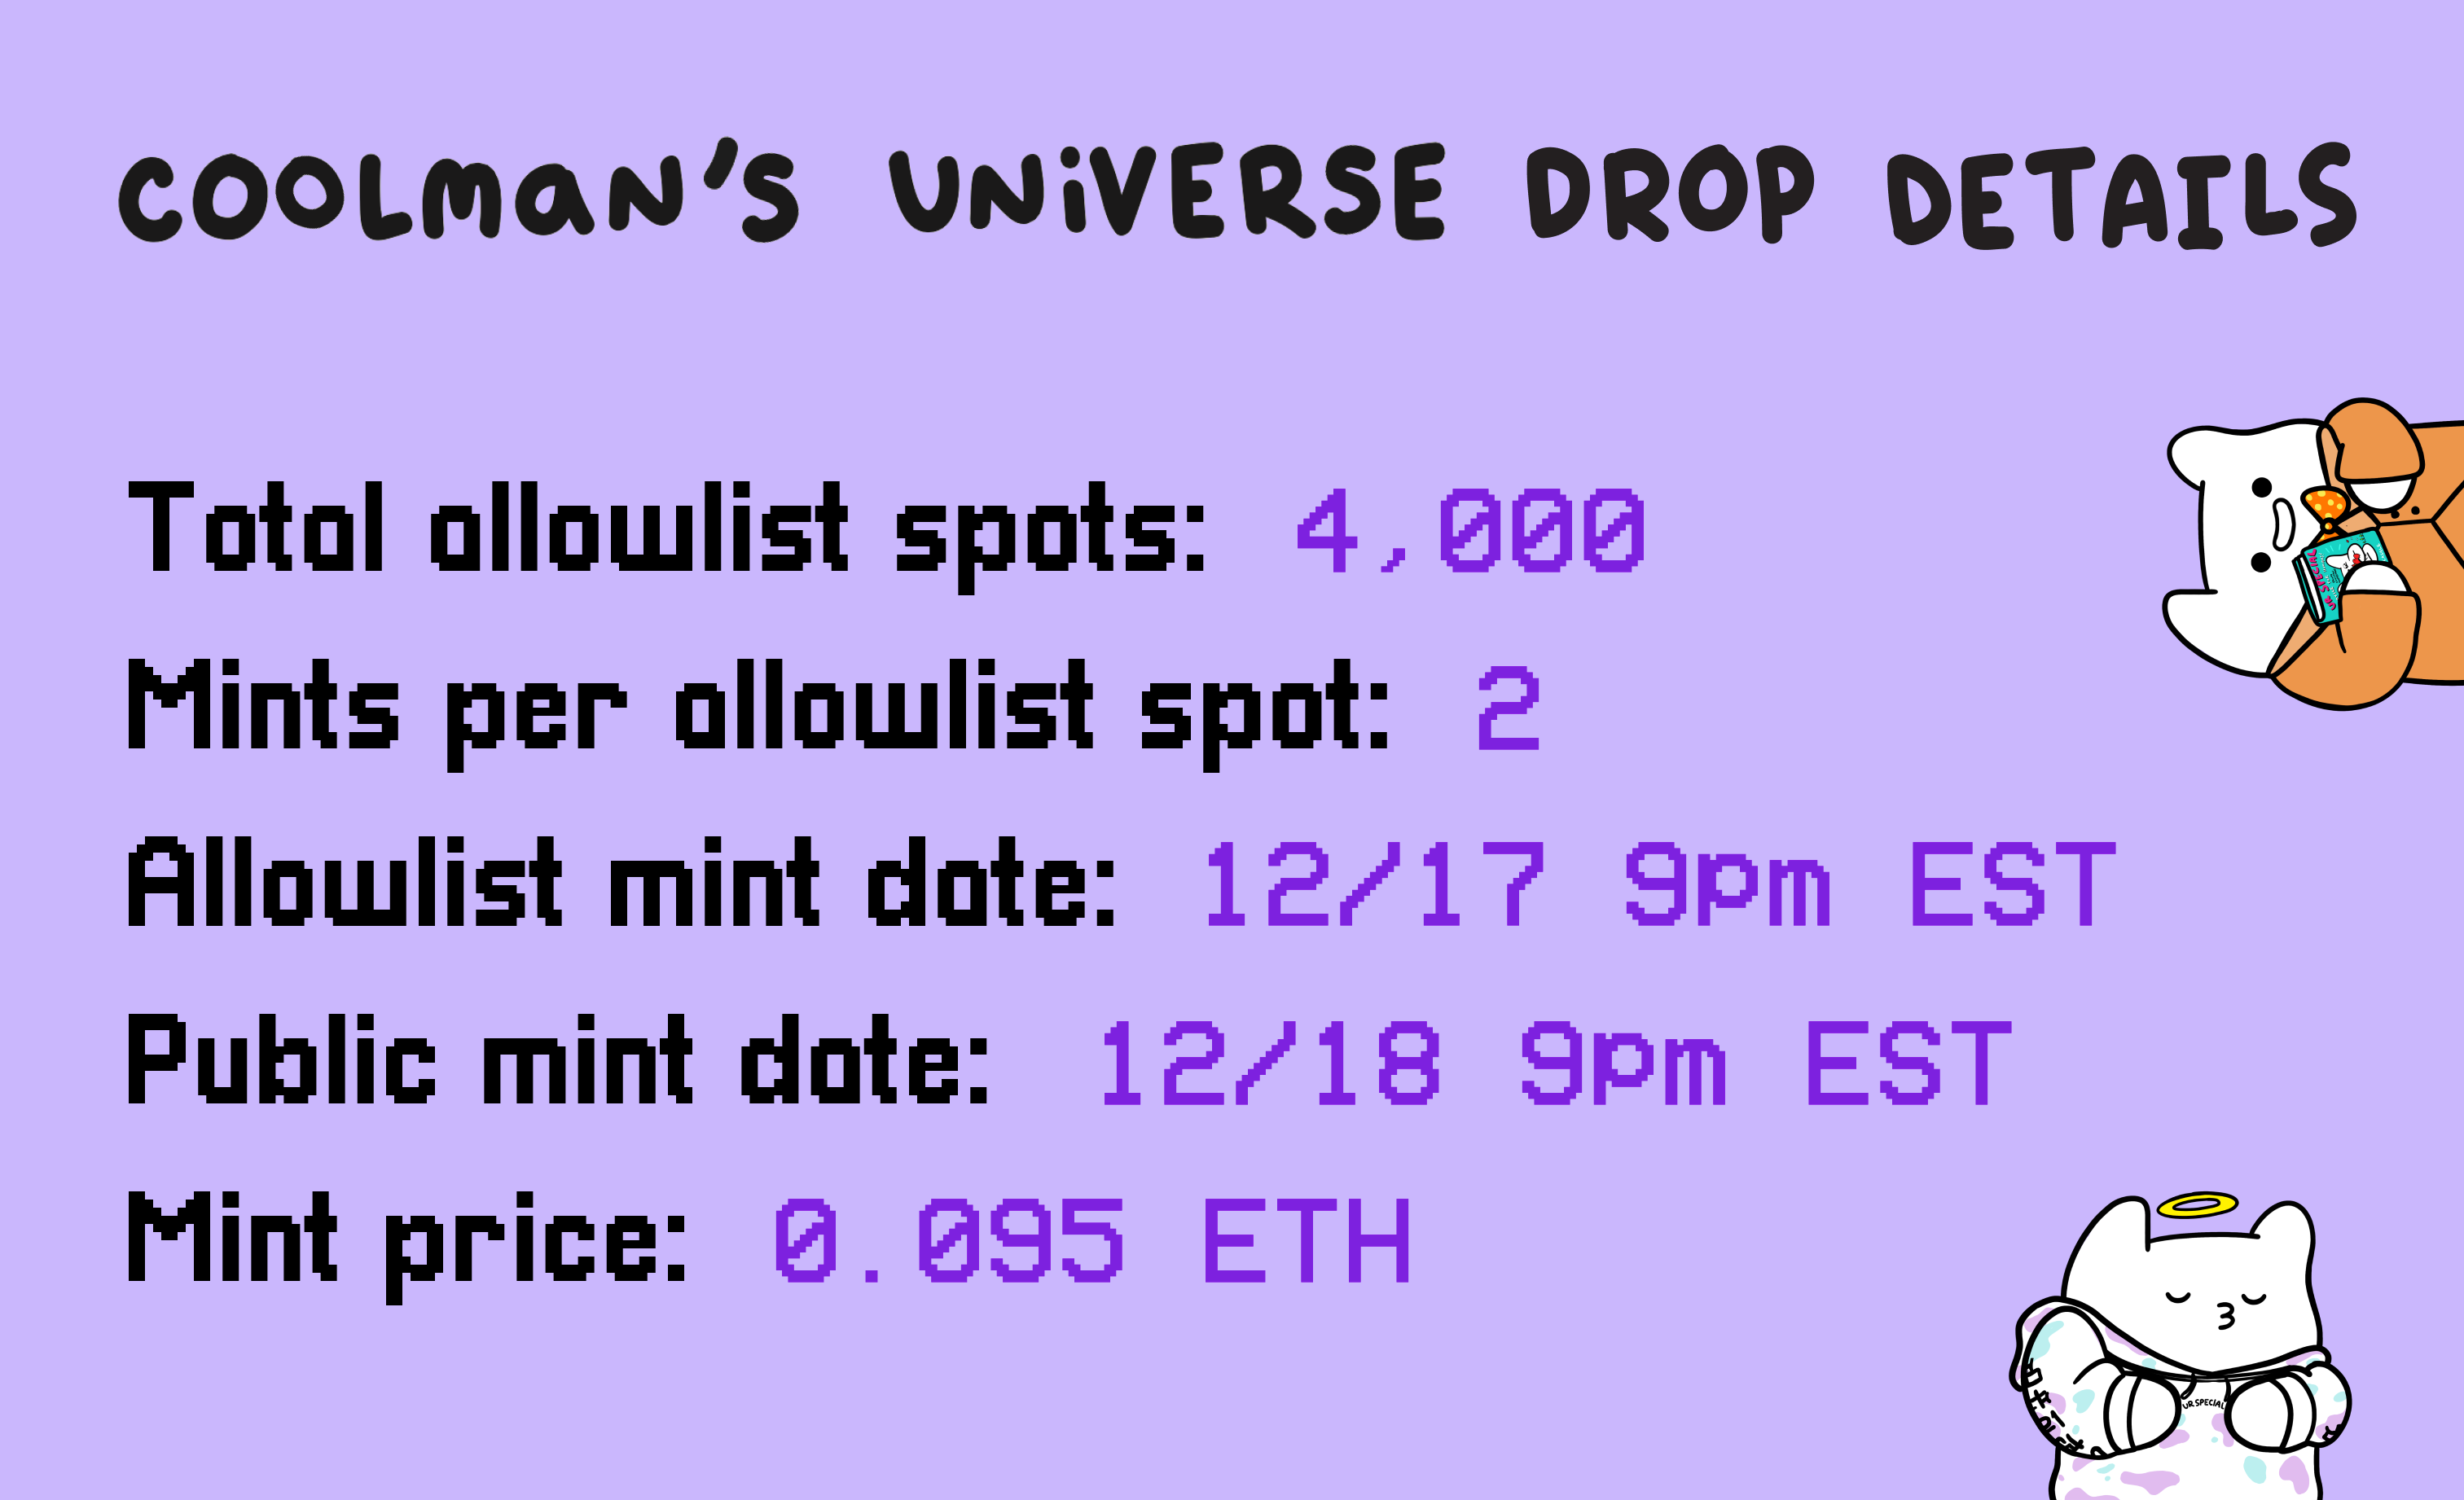 Official Coolman's Universe Drop Details